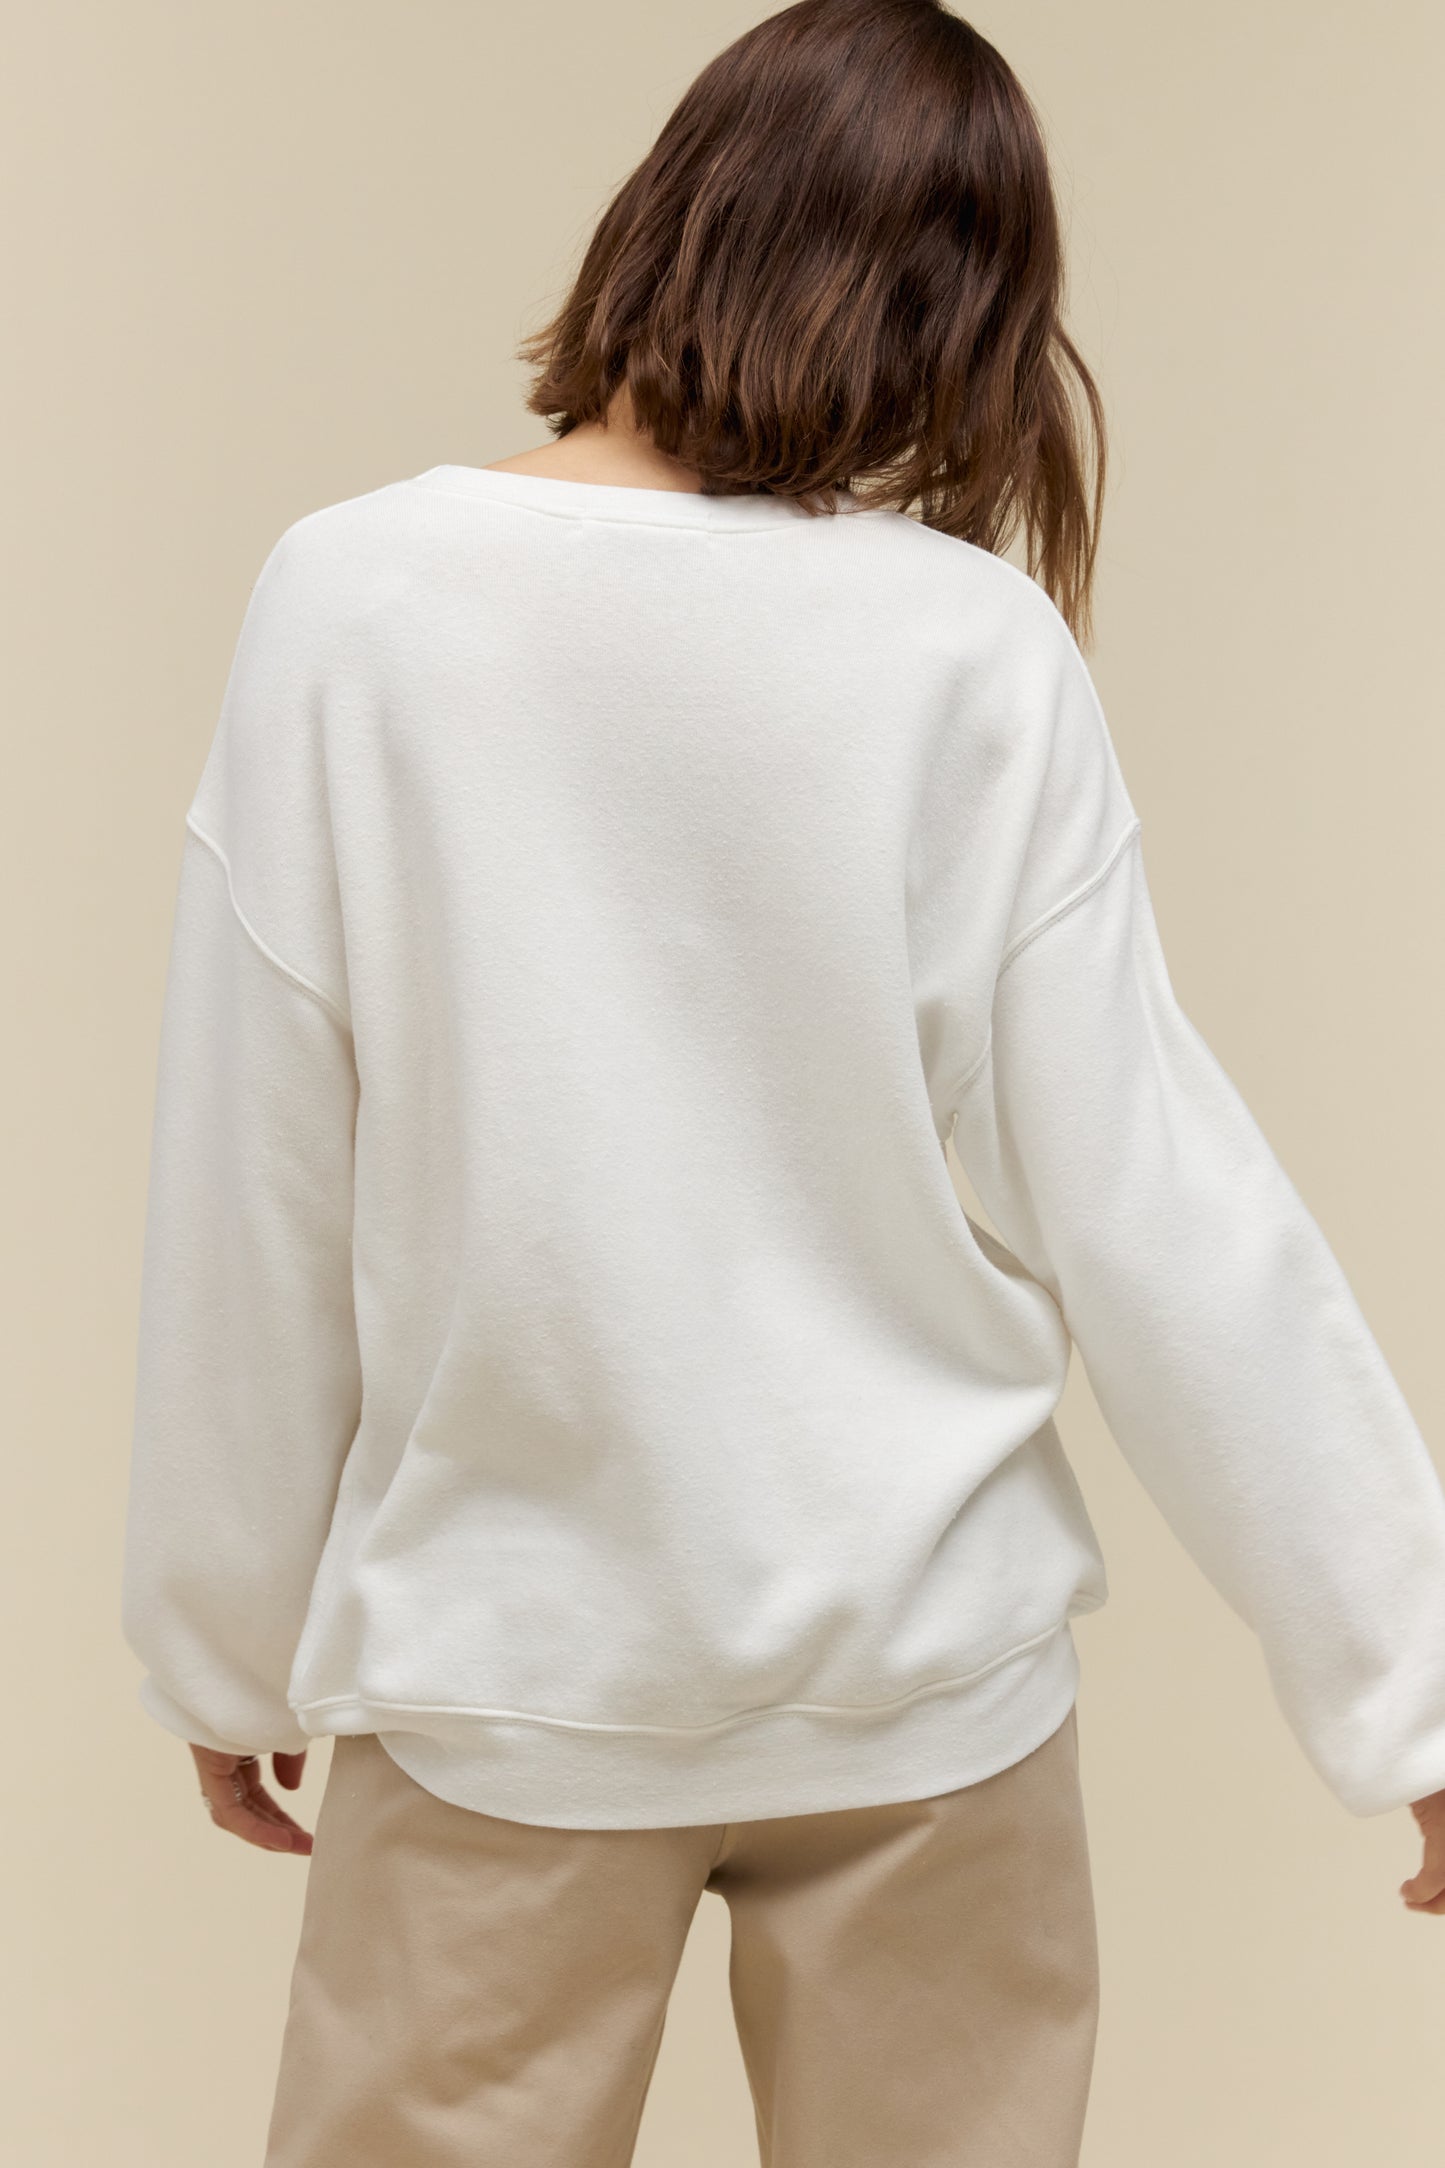 Model wearing a 'New York' collegiate style sweatshirt in a soft tri-blend fleece